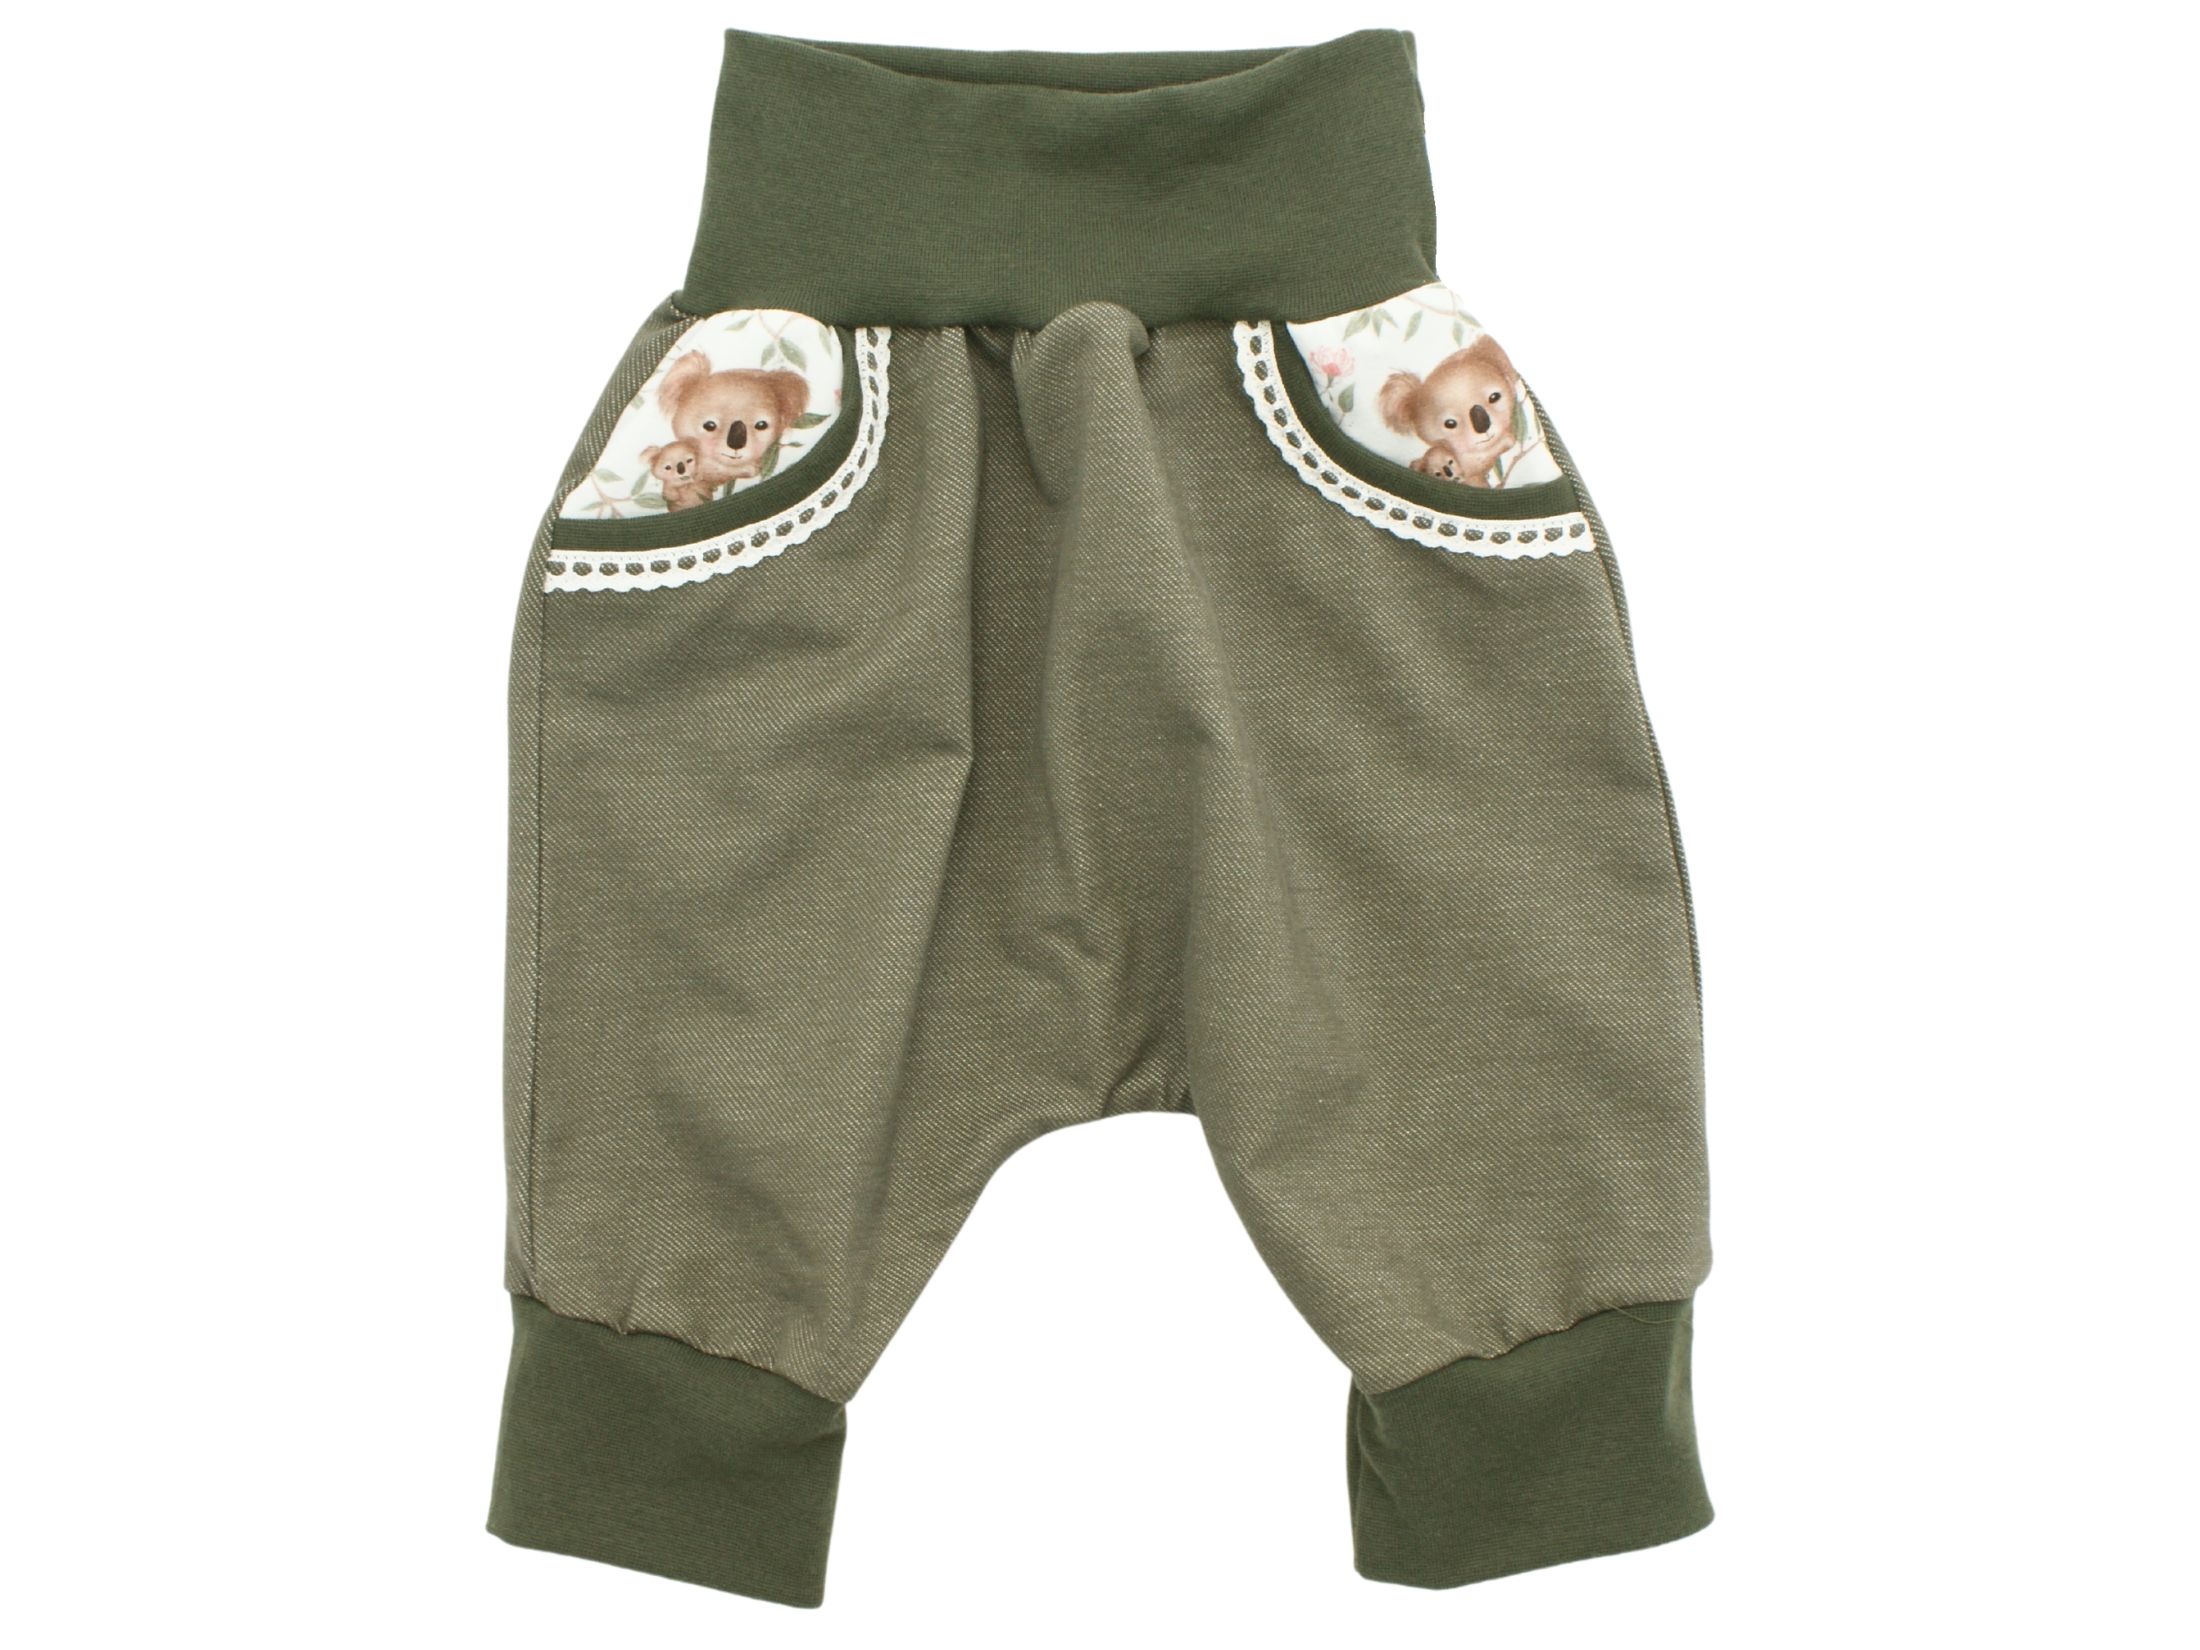 Kinder Bermuda-Shorts "Sweet Koalas" Jeansjersey oliv